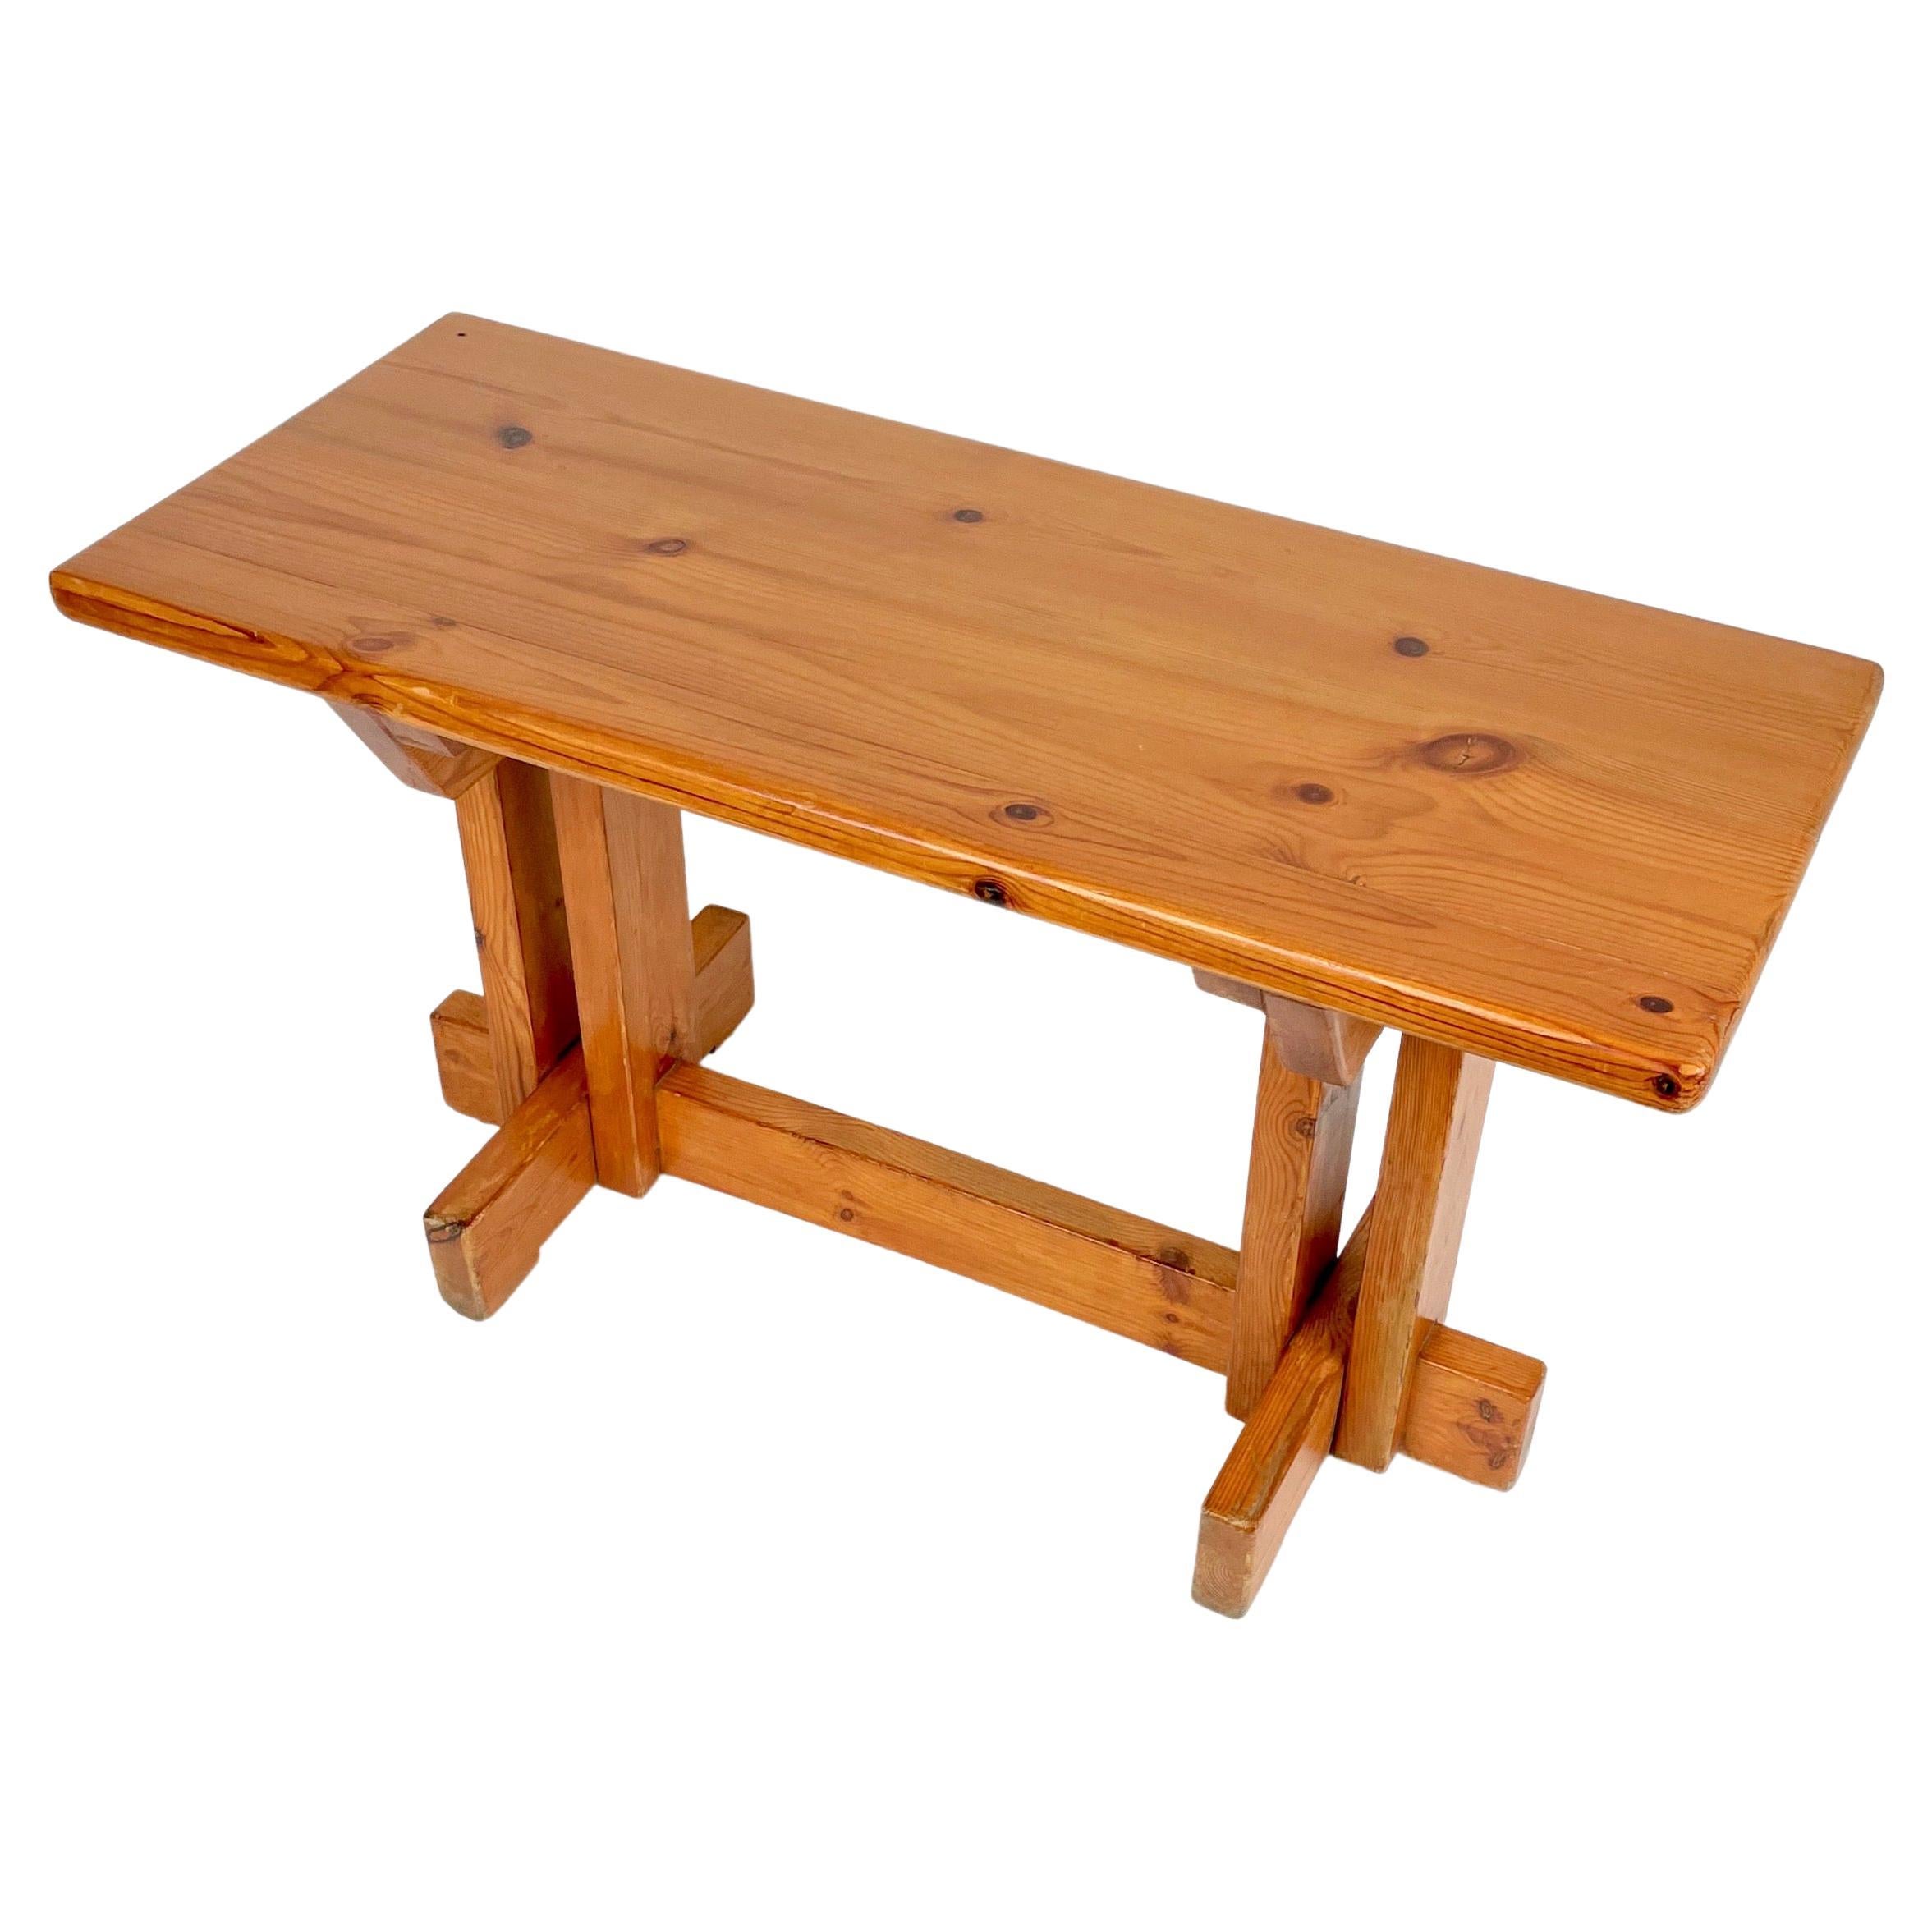 Banc ou table d'appoint en bois de pin dans le style de la designer française Charlotte Perriand. Fabriqué en France dans les années 1970.